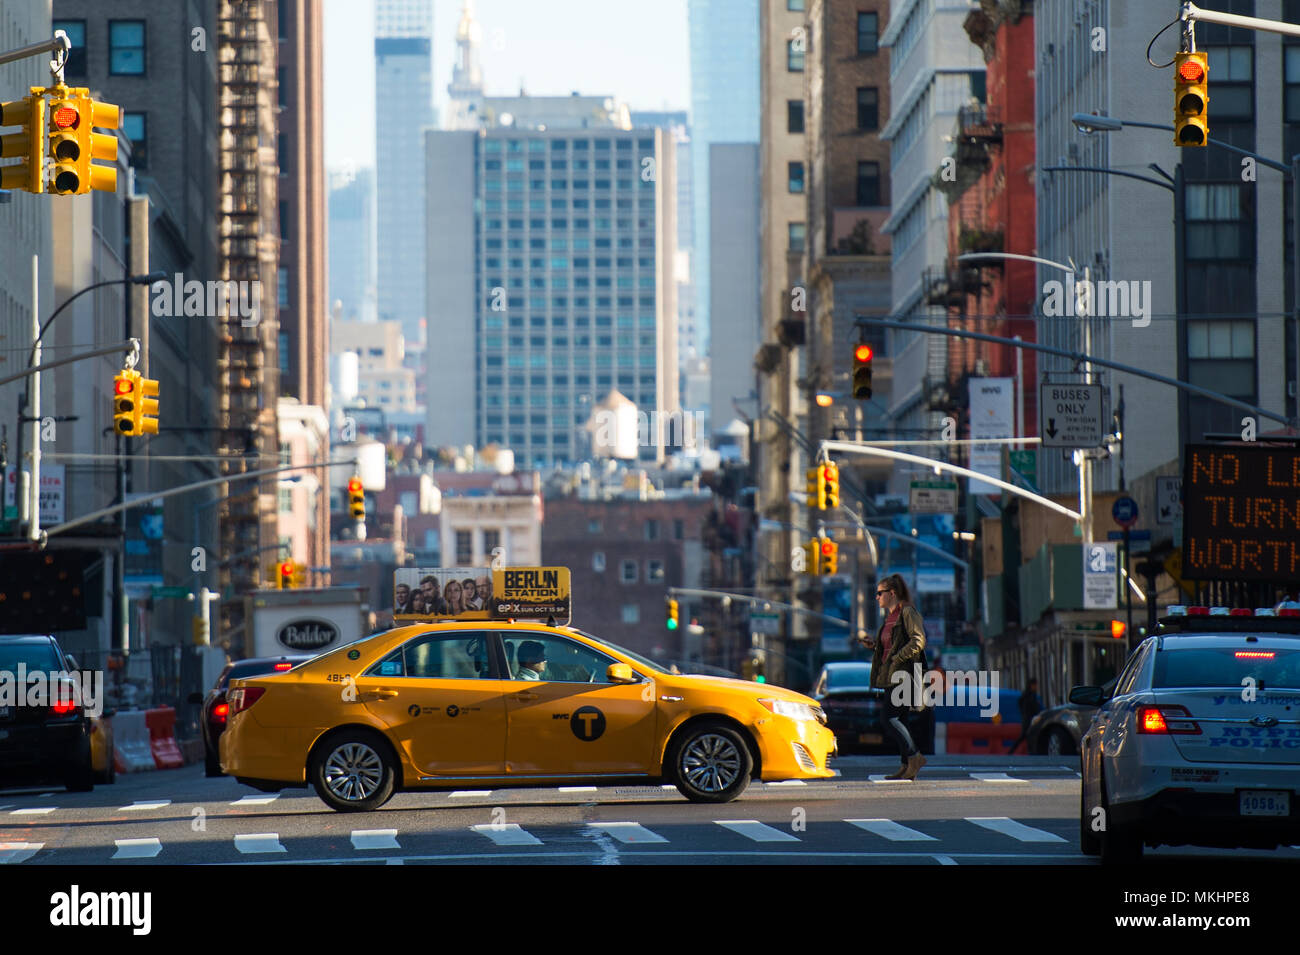 NEY YORK - Stati Uniti d'America - 28 ottobre 2017. Un taxi giallo sta attraversando un incrocio tra il 42 street durante il tramonto a Manhattan. Foto Stock